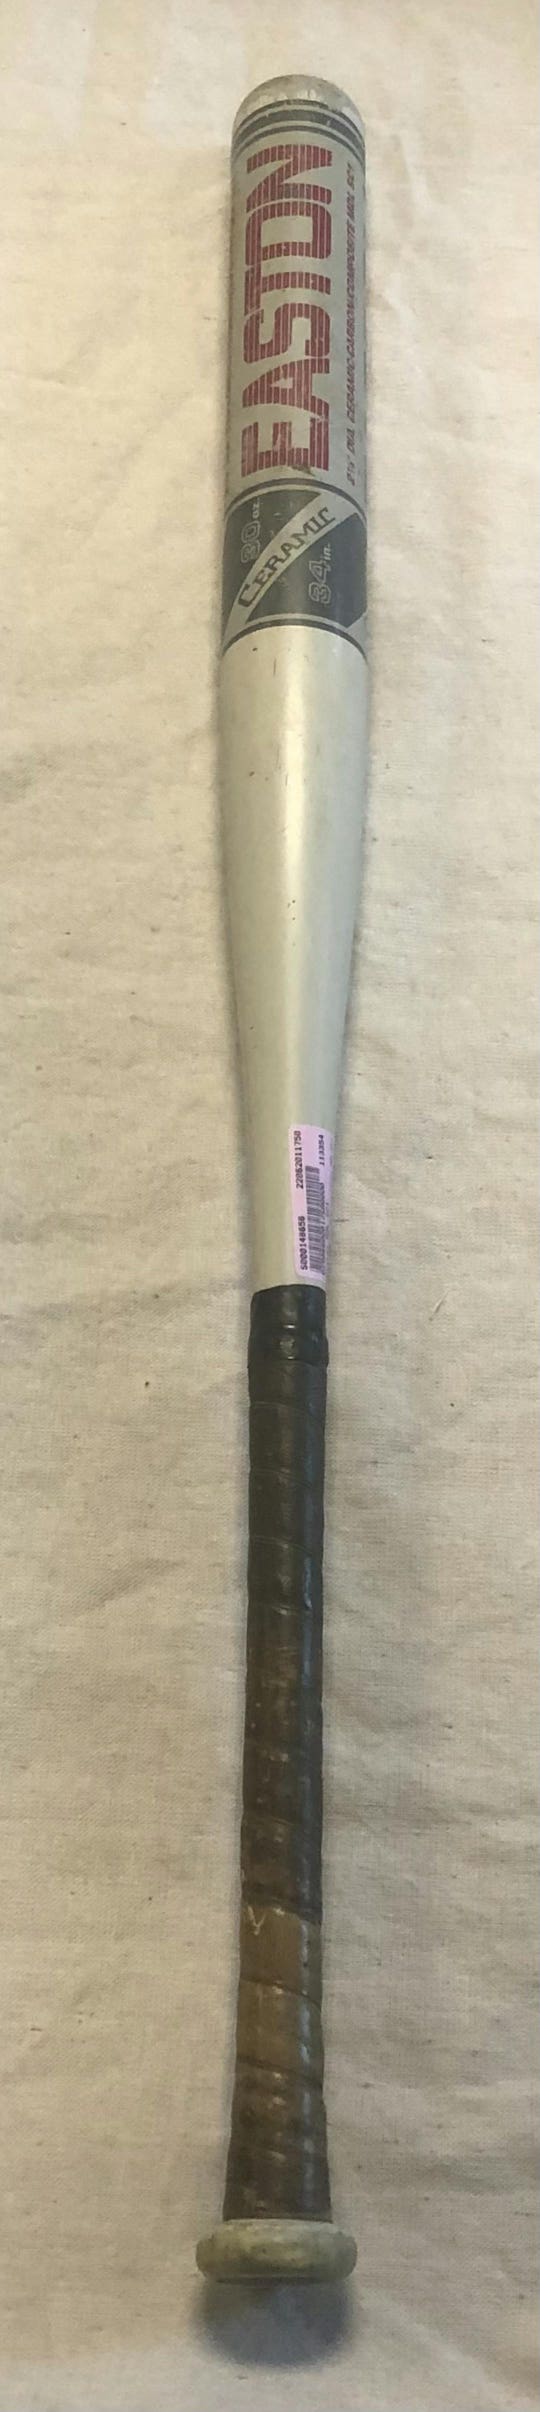 Used Easton Mdl Sc1 34" -4 Drop Slowpitch Bats